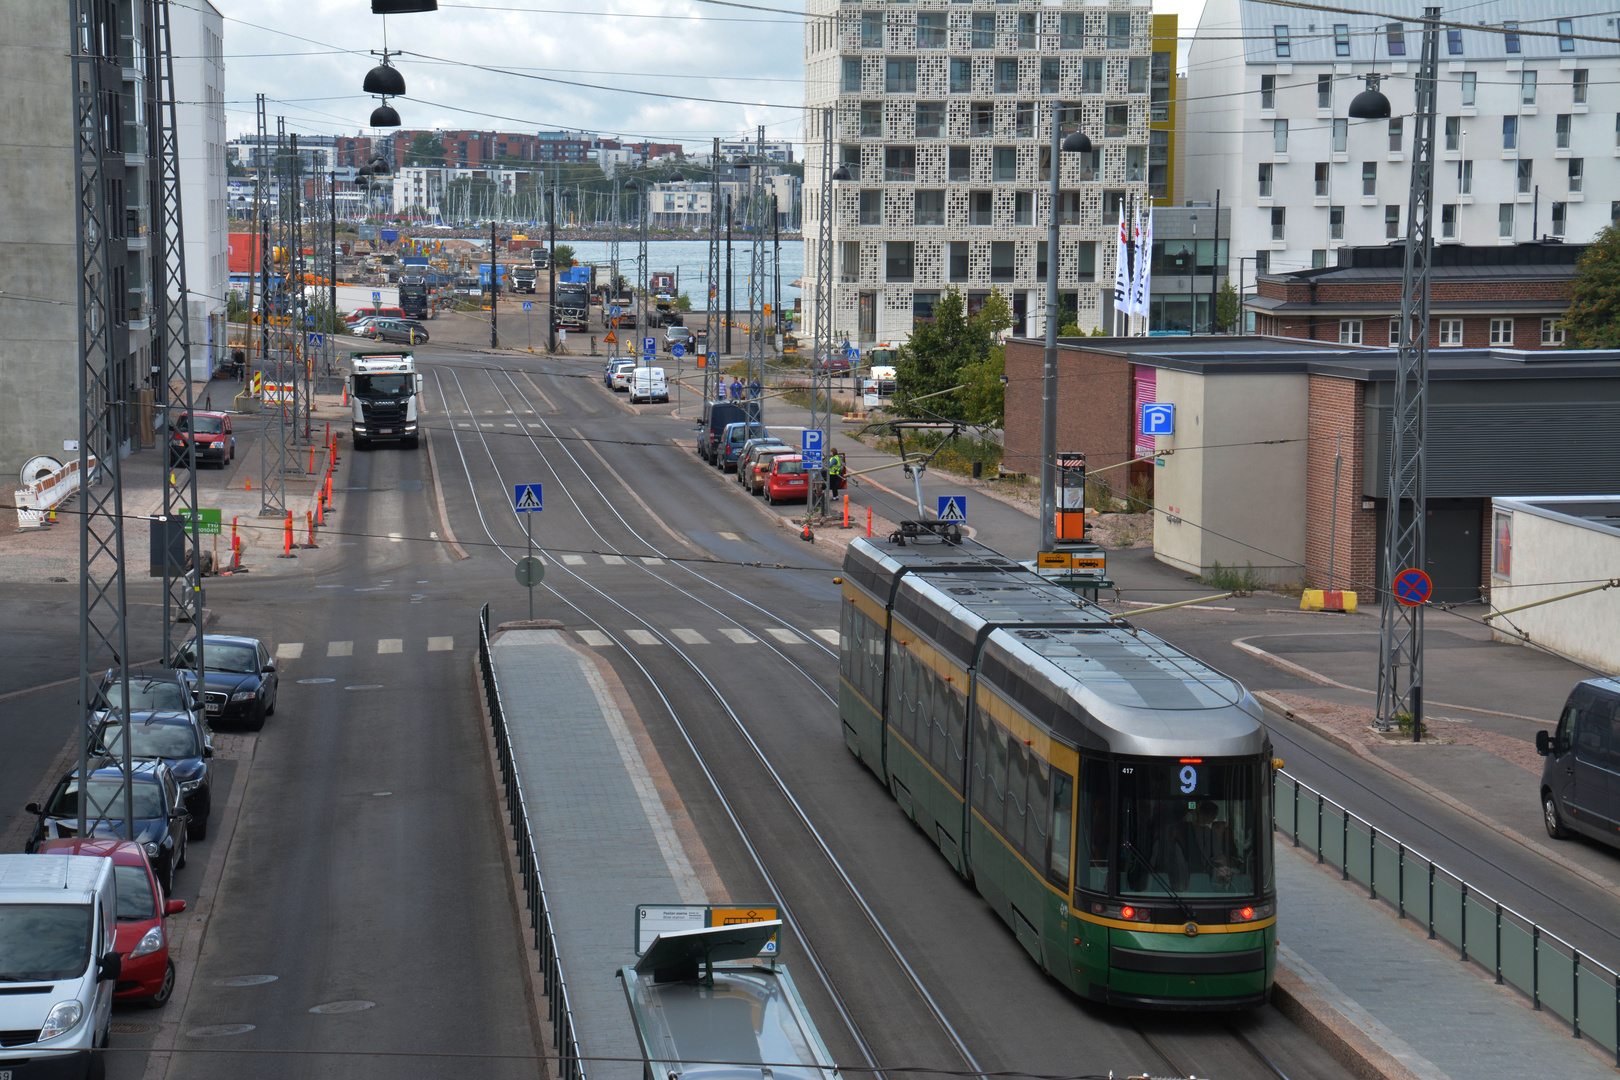 Helsinki, Jätkäsaari, The tramp line 9